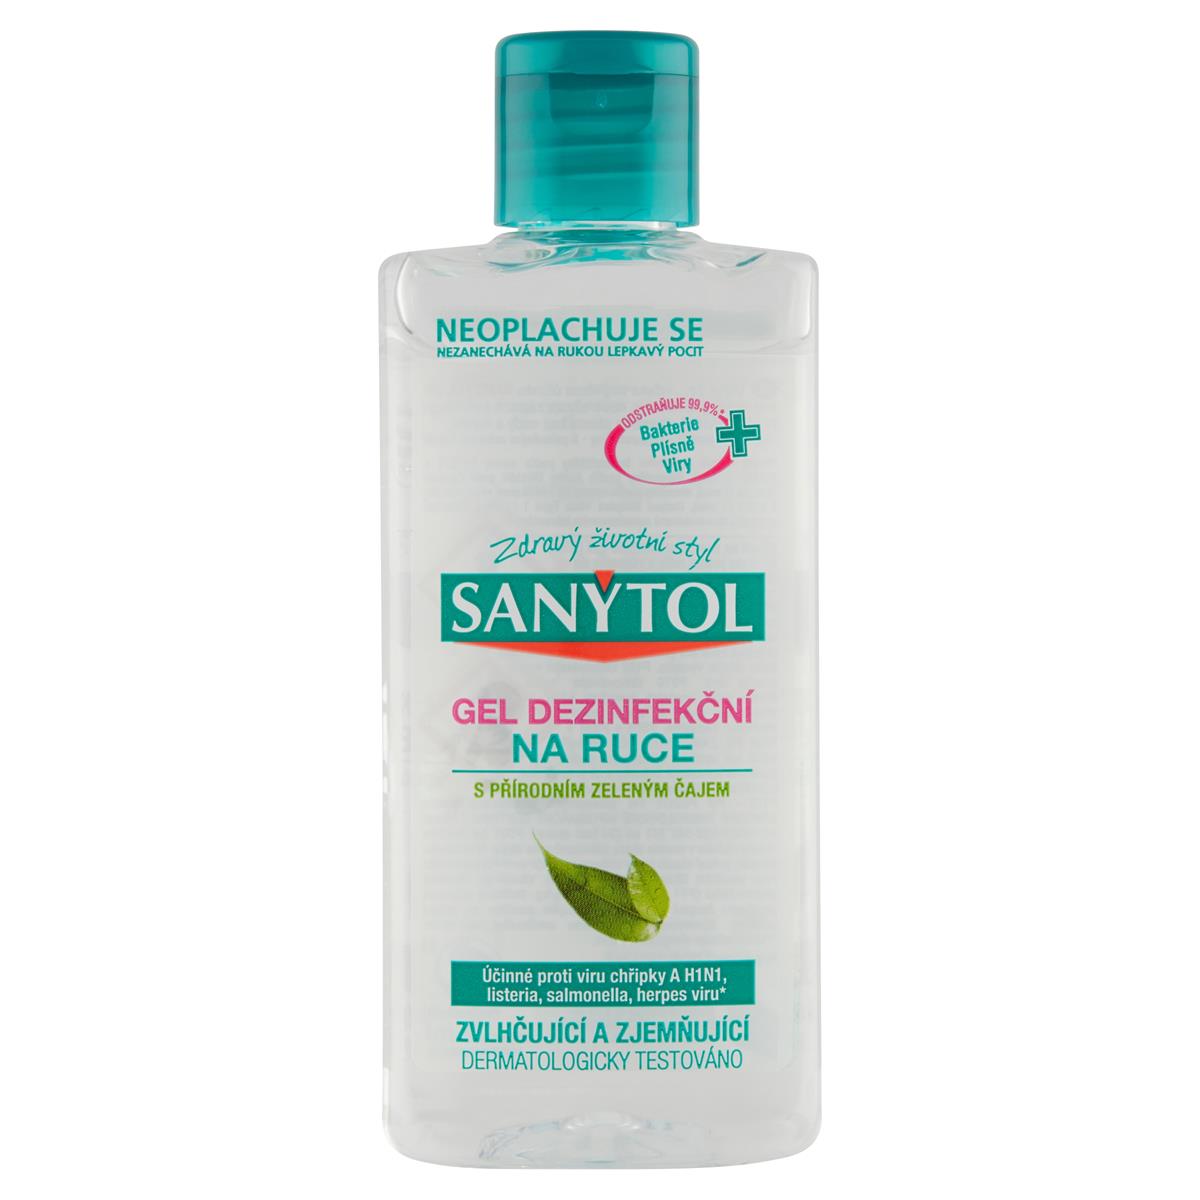 Sanytol dezinfekční gel na ruce, ničí viry a bakterie, 75 ml